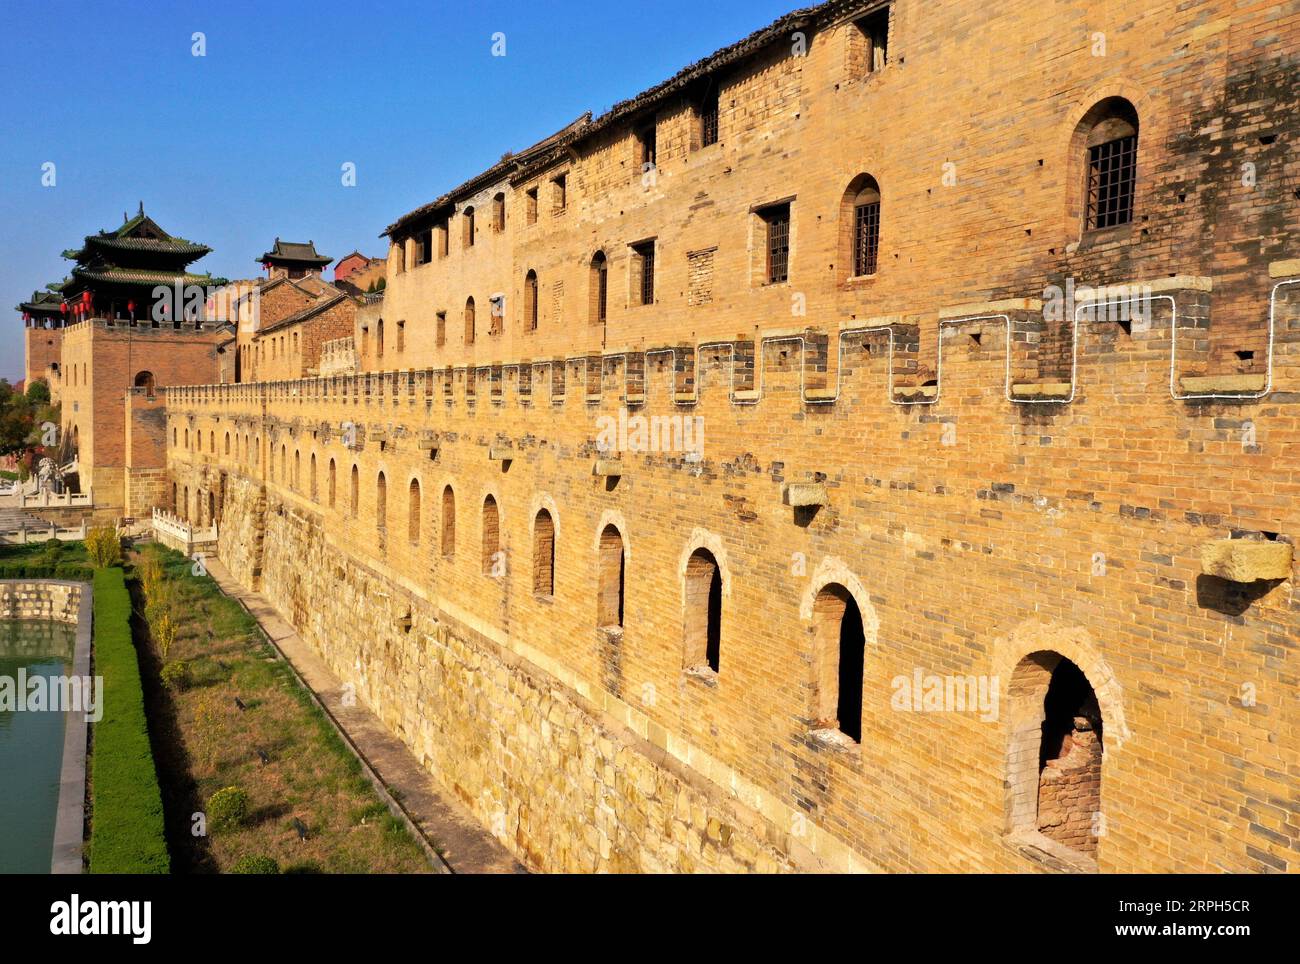 191030 -- JINCHENG, 30. Oktober 2019 -- Luftaufnahme, aufgenommen am 30. Oktober 2019, zeigt die Mauern von Xiangyu Castle im Qinshui County, nordchinesische Provinz Shanxi. Die Burg Xiangyu, die in der Ming-Dynastie von 1368 bis 1644 erbaut wurde, hat viele Touristen mit ihrem schönen Graben, einzigartigen Mauern und Innenhöfen angezogen. CHINA-SHANXI-ALTE BURG CN CaoxYang PUBLICATIONxNOTxINxCHN Stockfoto